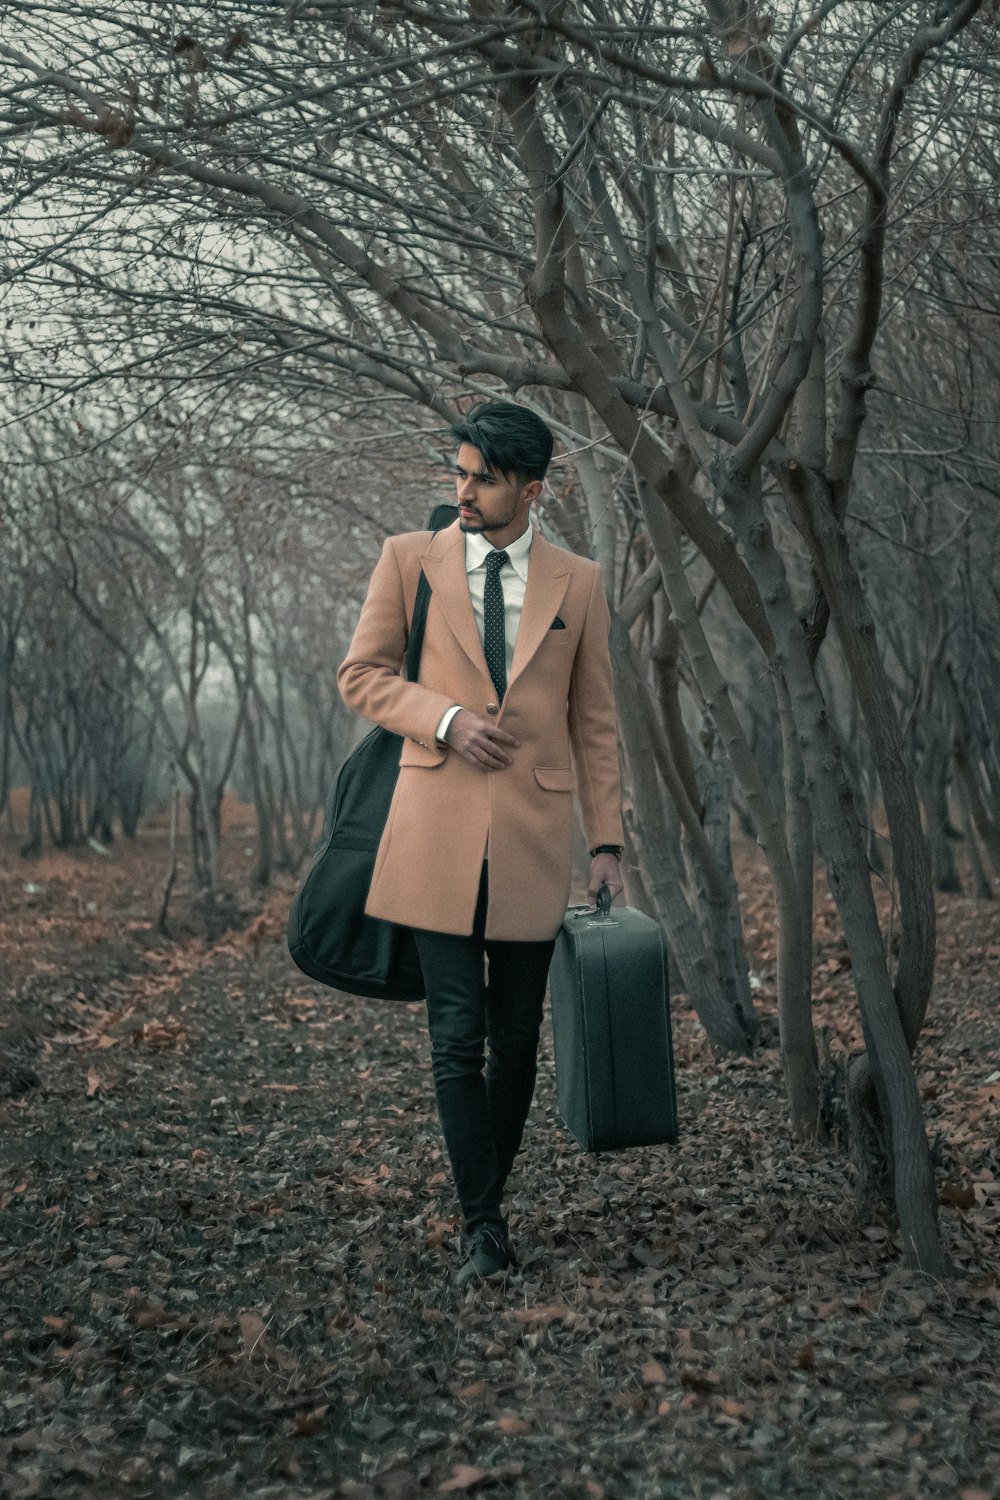 Un uomo che cammina attraverso una foresta portando una valigia